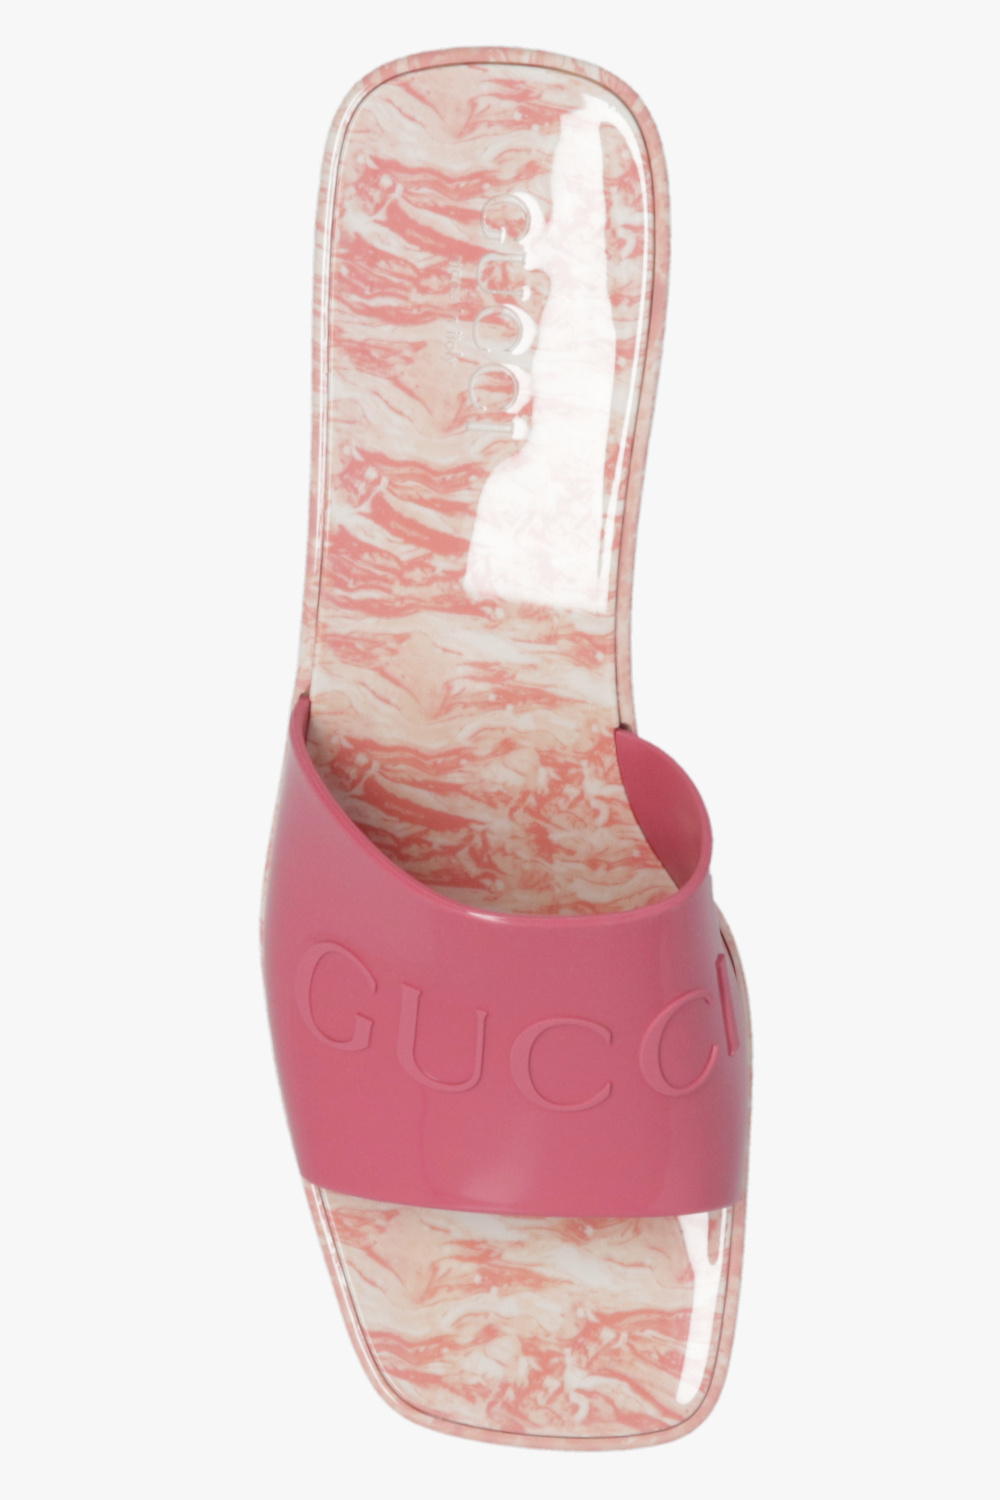 Gucci Nike Huarache Black Gucci Custom